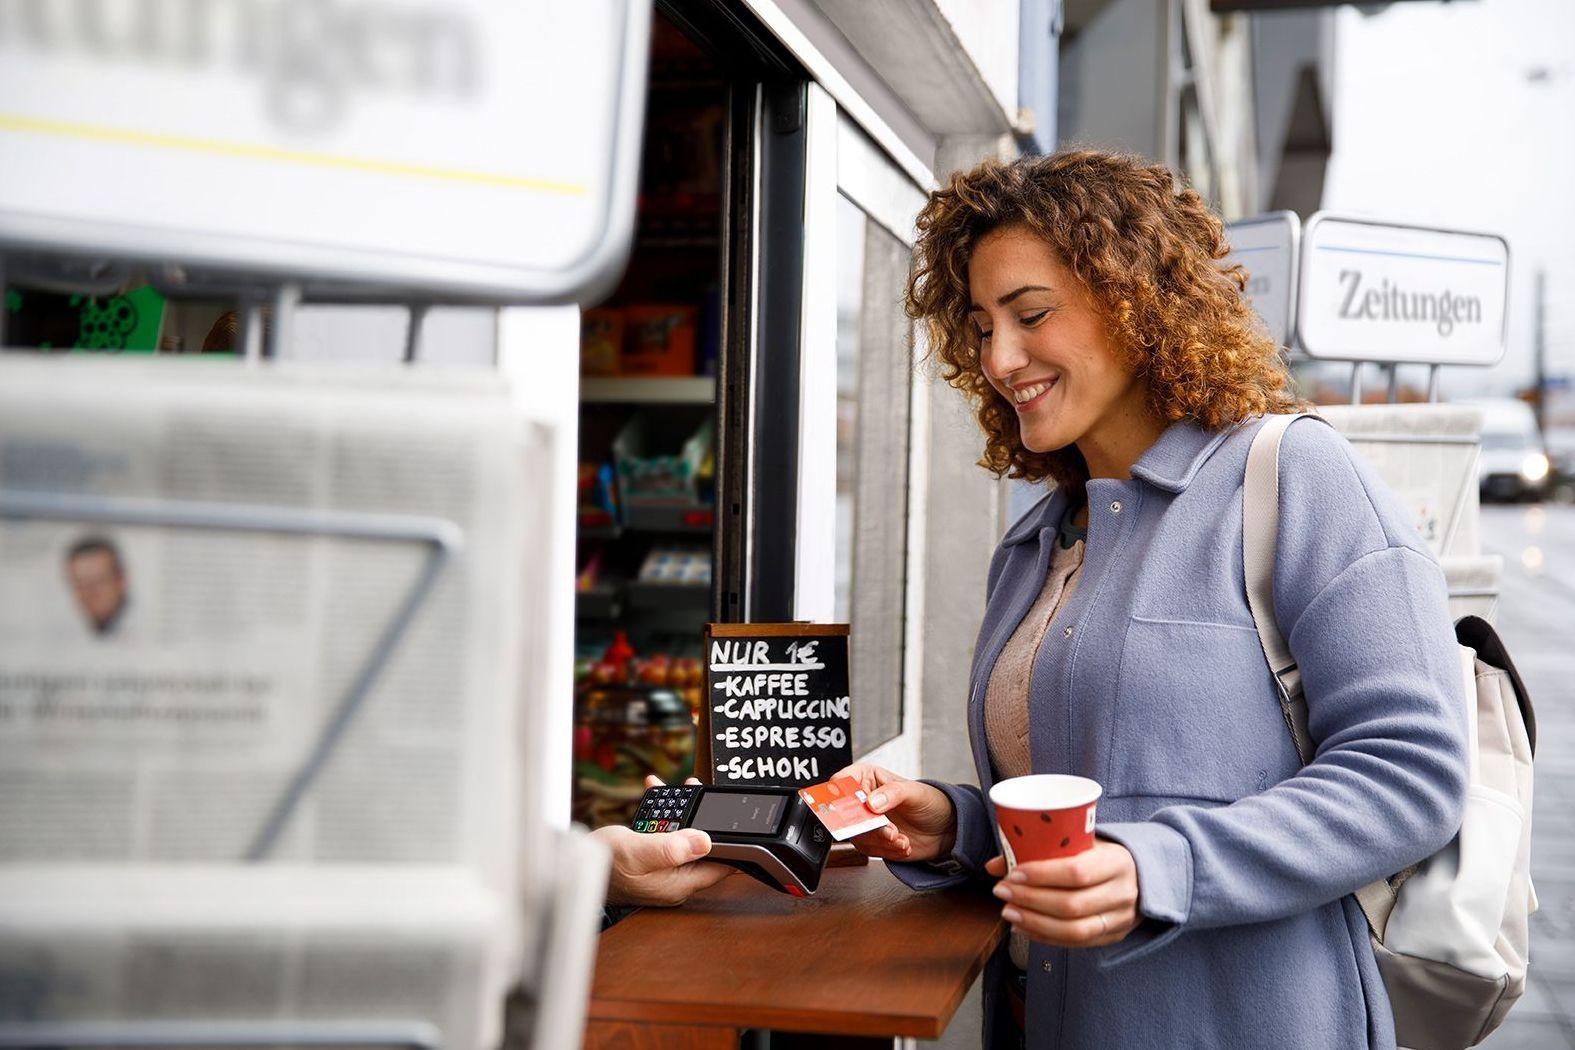 Junge Frau mit dunklen Locken kauft mit der Sparkassenbankkarte ein Heißgetränk an einem Kiosk.